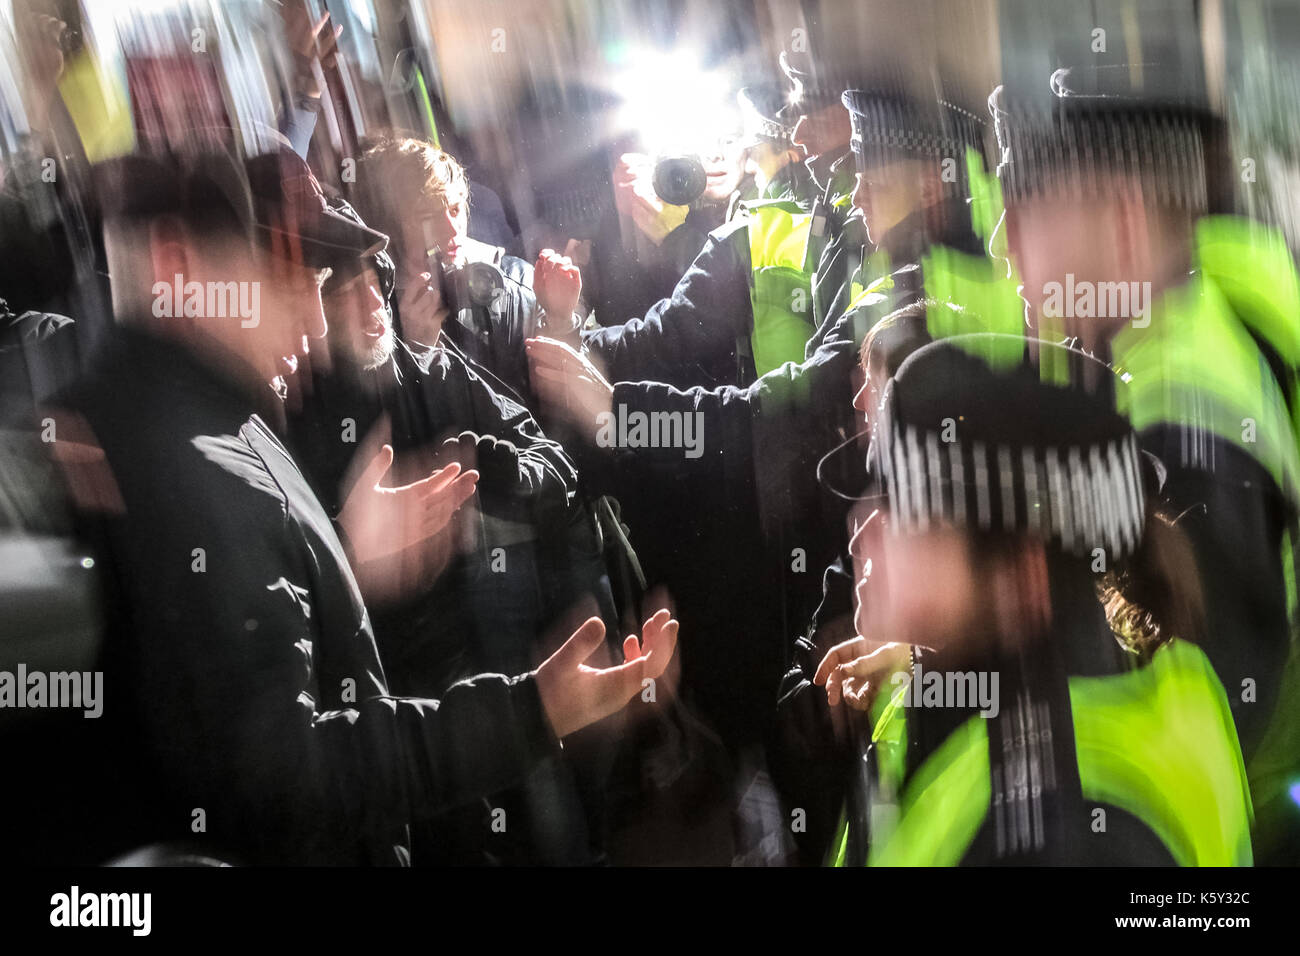 Auseinandersetzungen mit der Polizei, als die Demonstranten Millbank Tower - die Konservative Partei zu geben versuchen. Studenten protestieren in London gegen die Kürzung der öffentlichen Ausgaben und die Erhöhung der Studiengebühren. Stockfoto